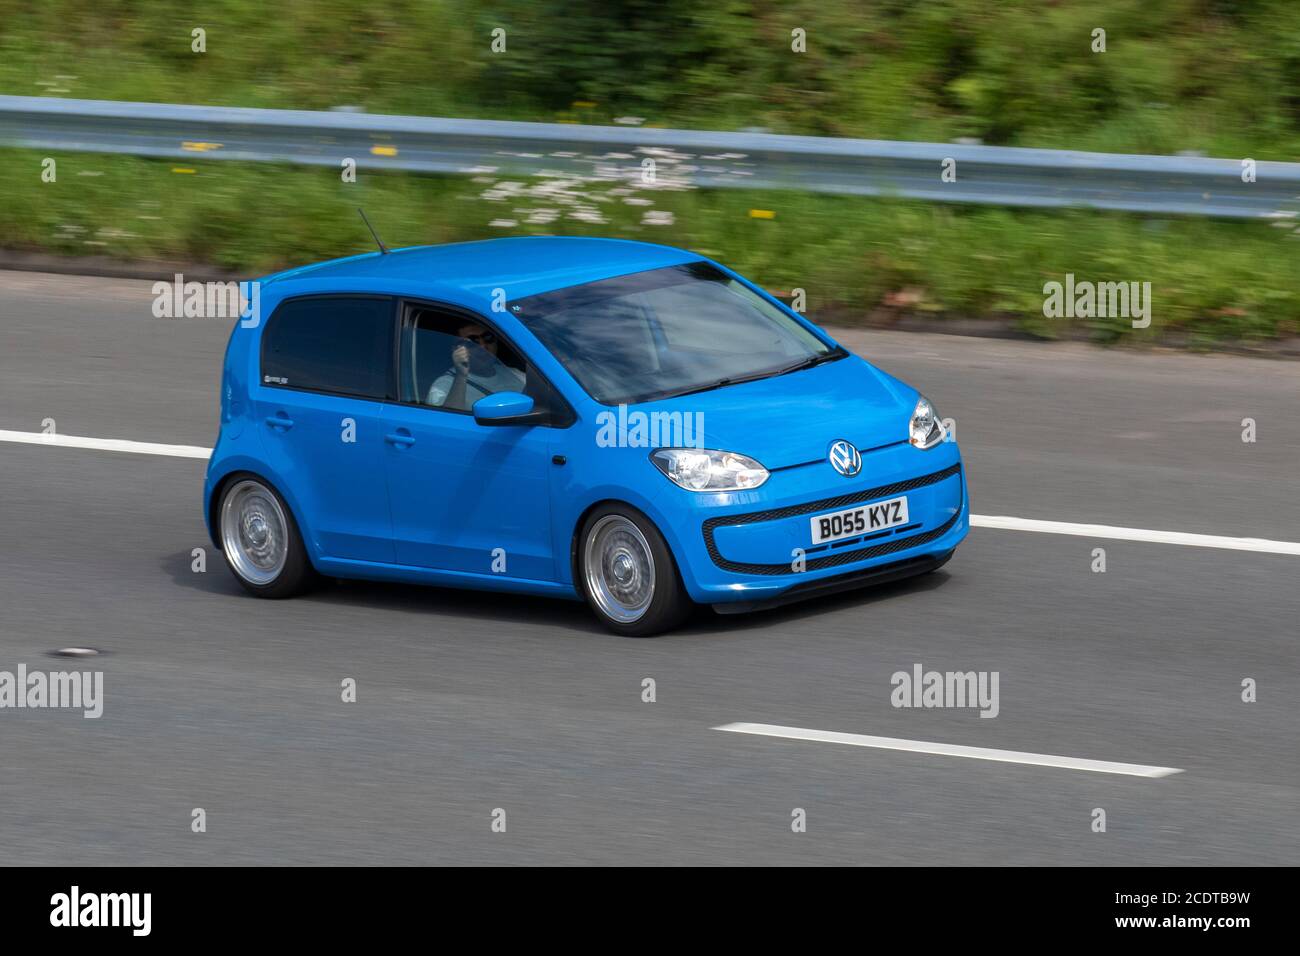 2015 blauer VW Volkswagen zieht NACH OBEN; Fahrzeuge mit fahrendem Verkehr, Fahrzeuge, die Fahrzeuge auf britischen Straßen fahren, Motoren, Fahrzeuge auf dem Autobahnnetz der Autobahn M6. Stockfoto